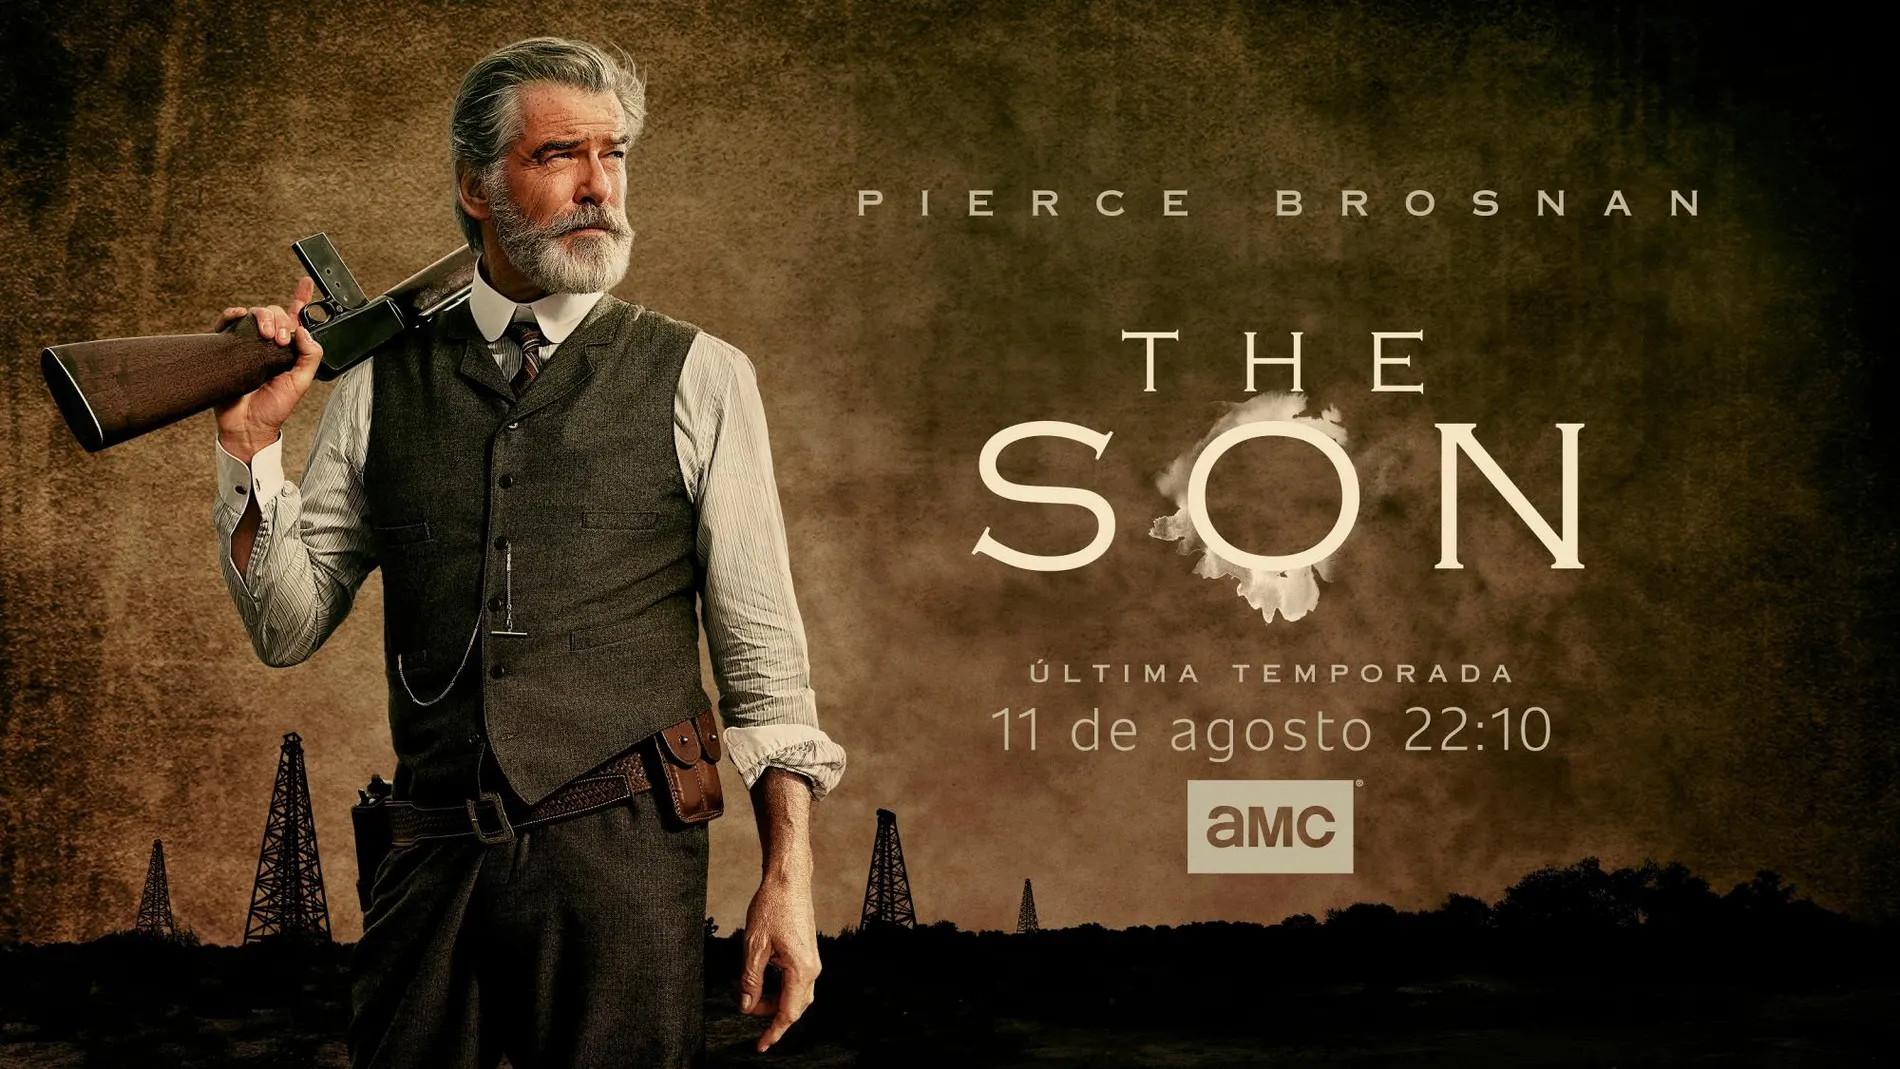 Cartel promocional de la segunda temporada de The Son